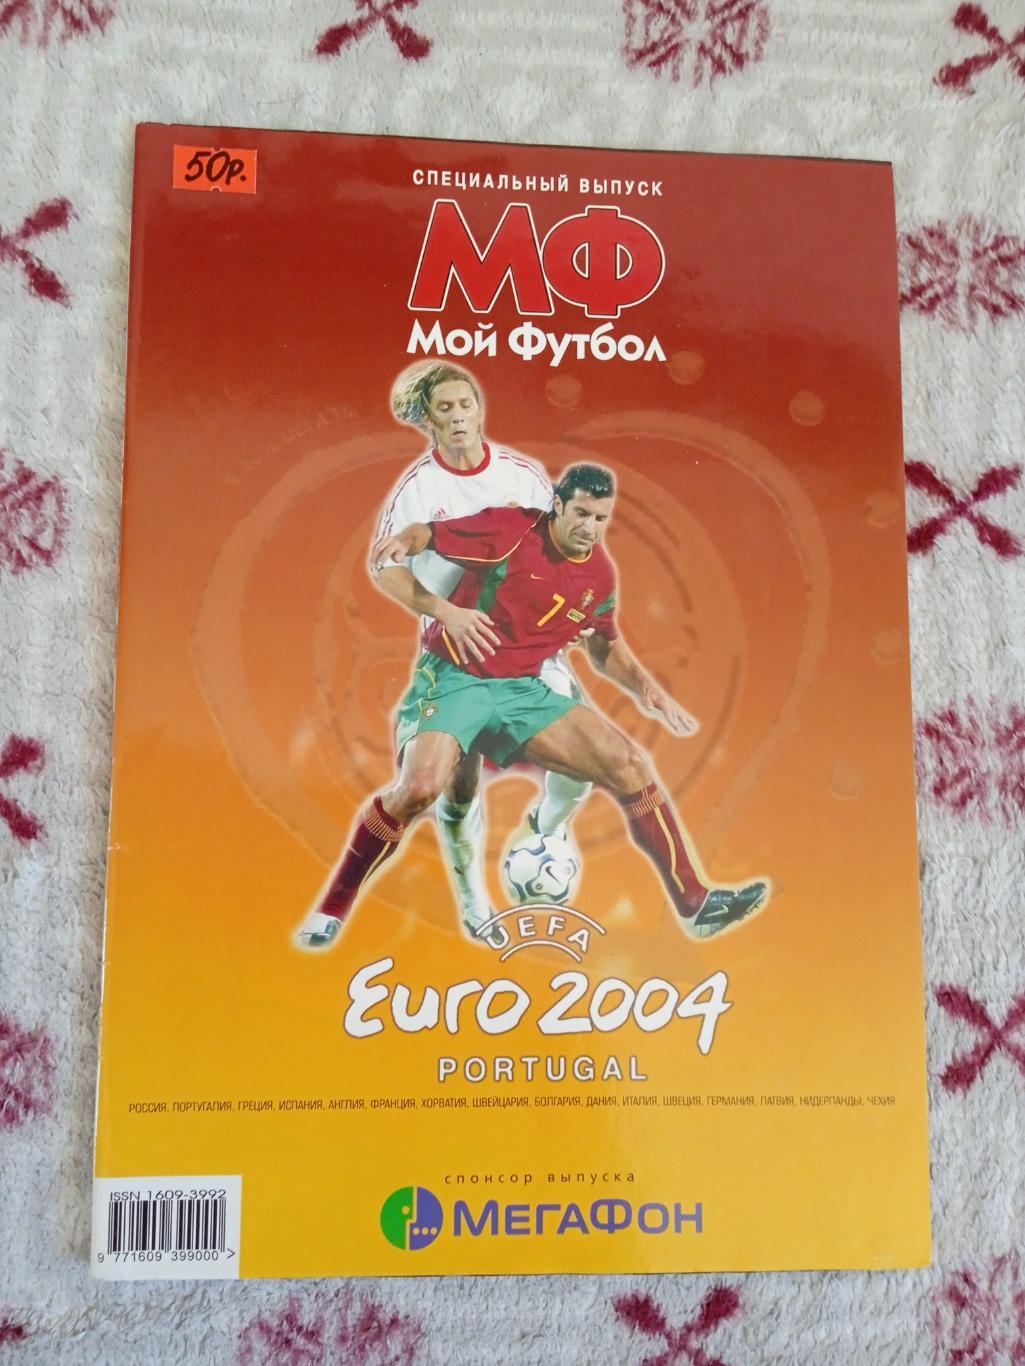 Журнал.Мой футбол.Специальный выпуск 2004 г. (ЧЕ 2004 Португалия).